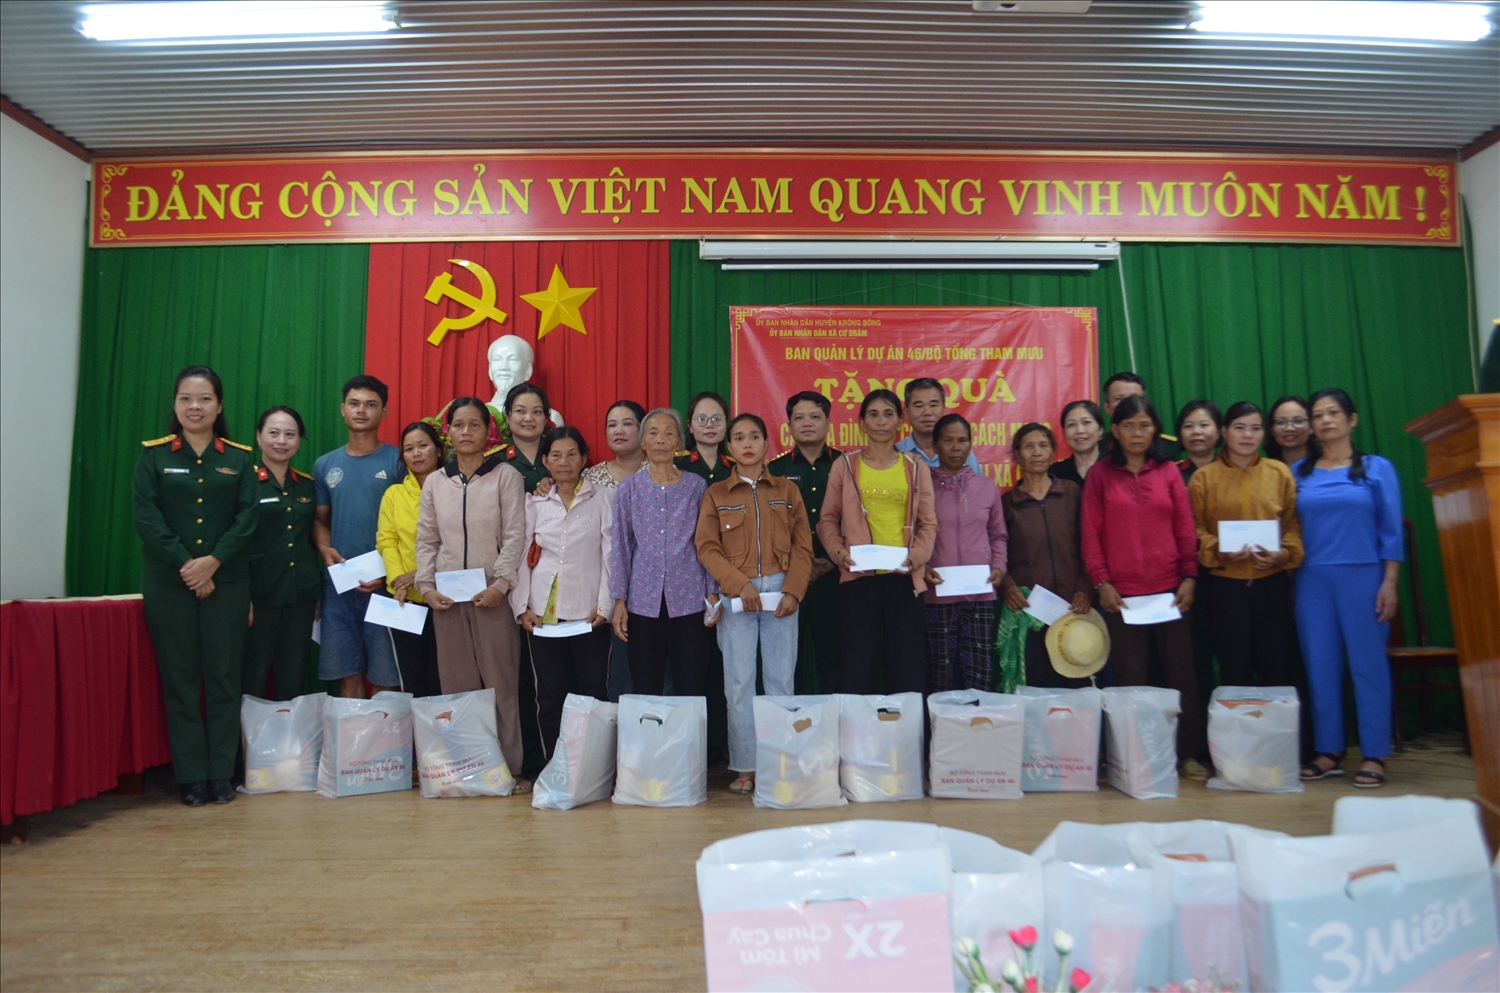 Đại diện Ban Quản lý dự án 46 và chính quyền địa phương trao quà tặng các gia đình chính sách, gia đình hộ nghèo trên địa bàn xã Cư Đrăm, huyện Krông Bông